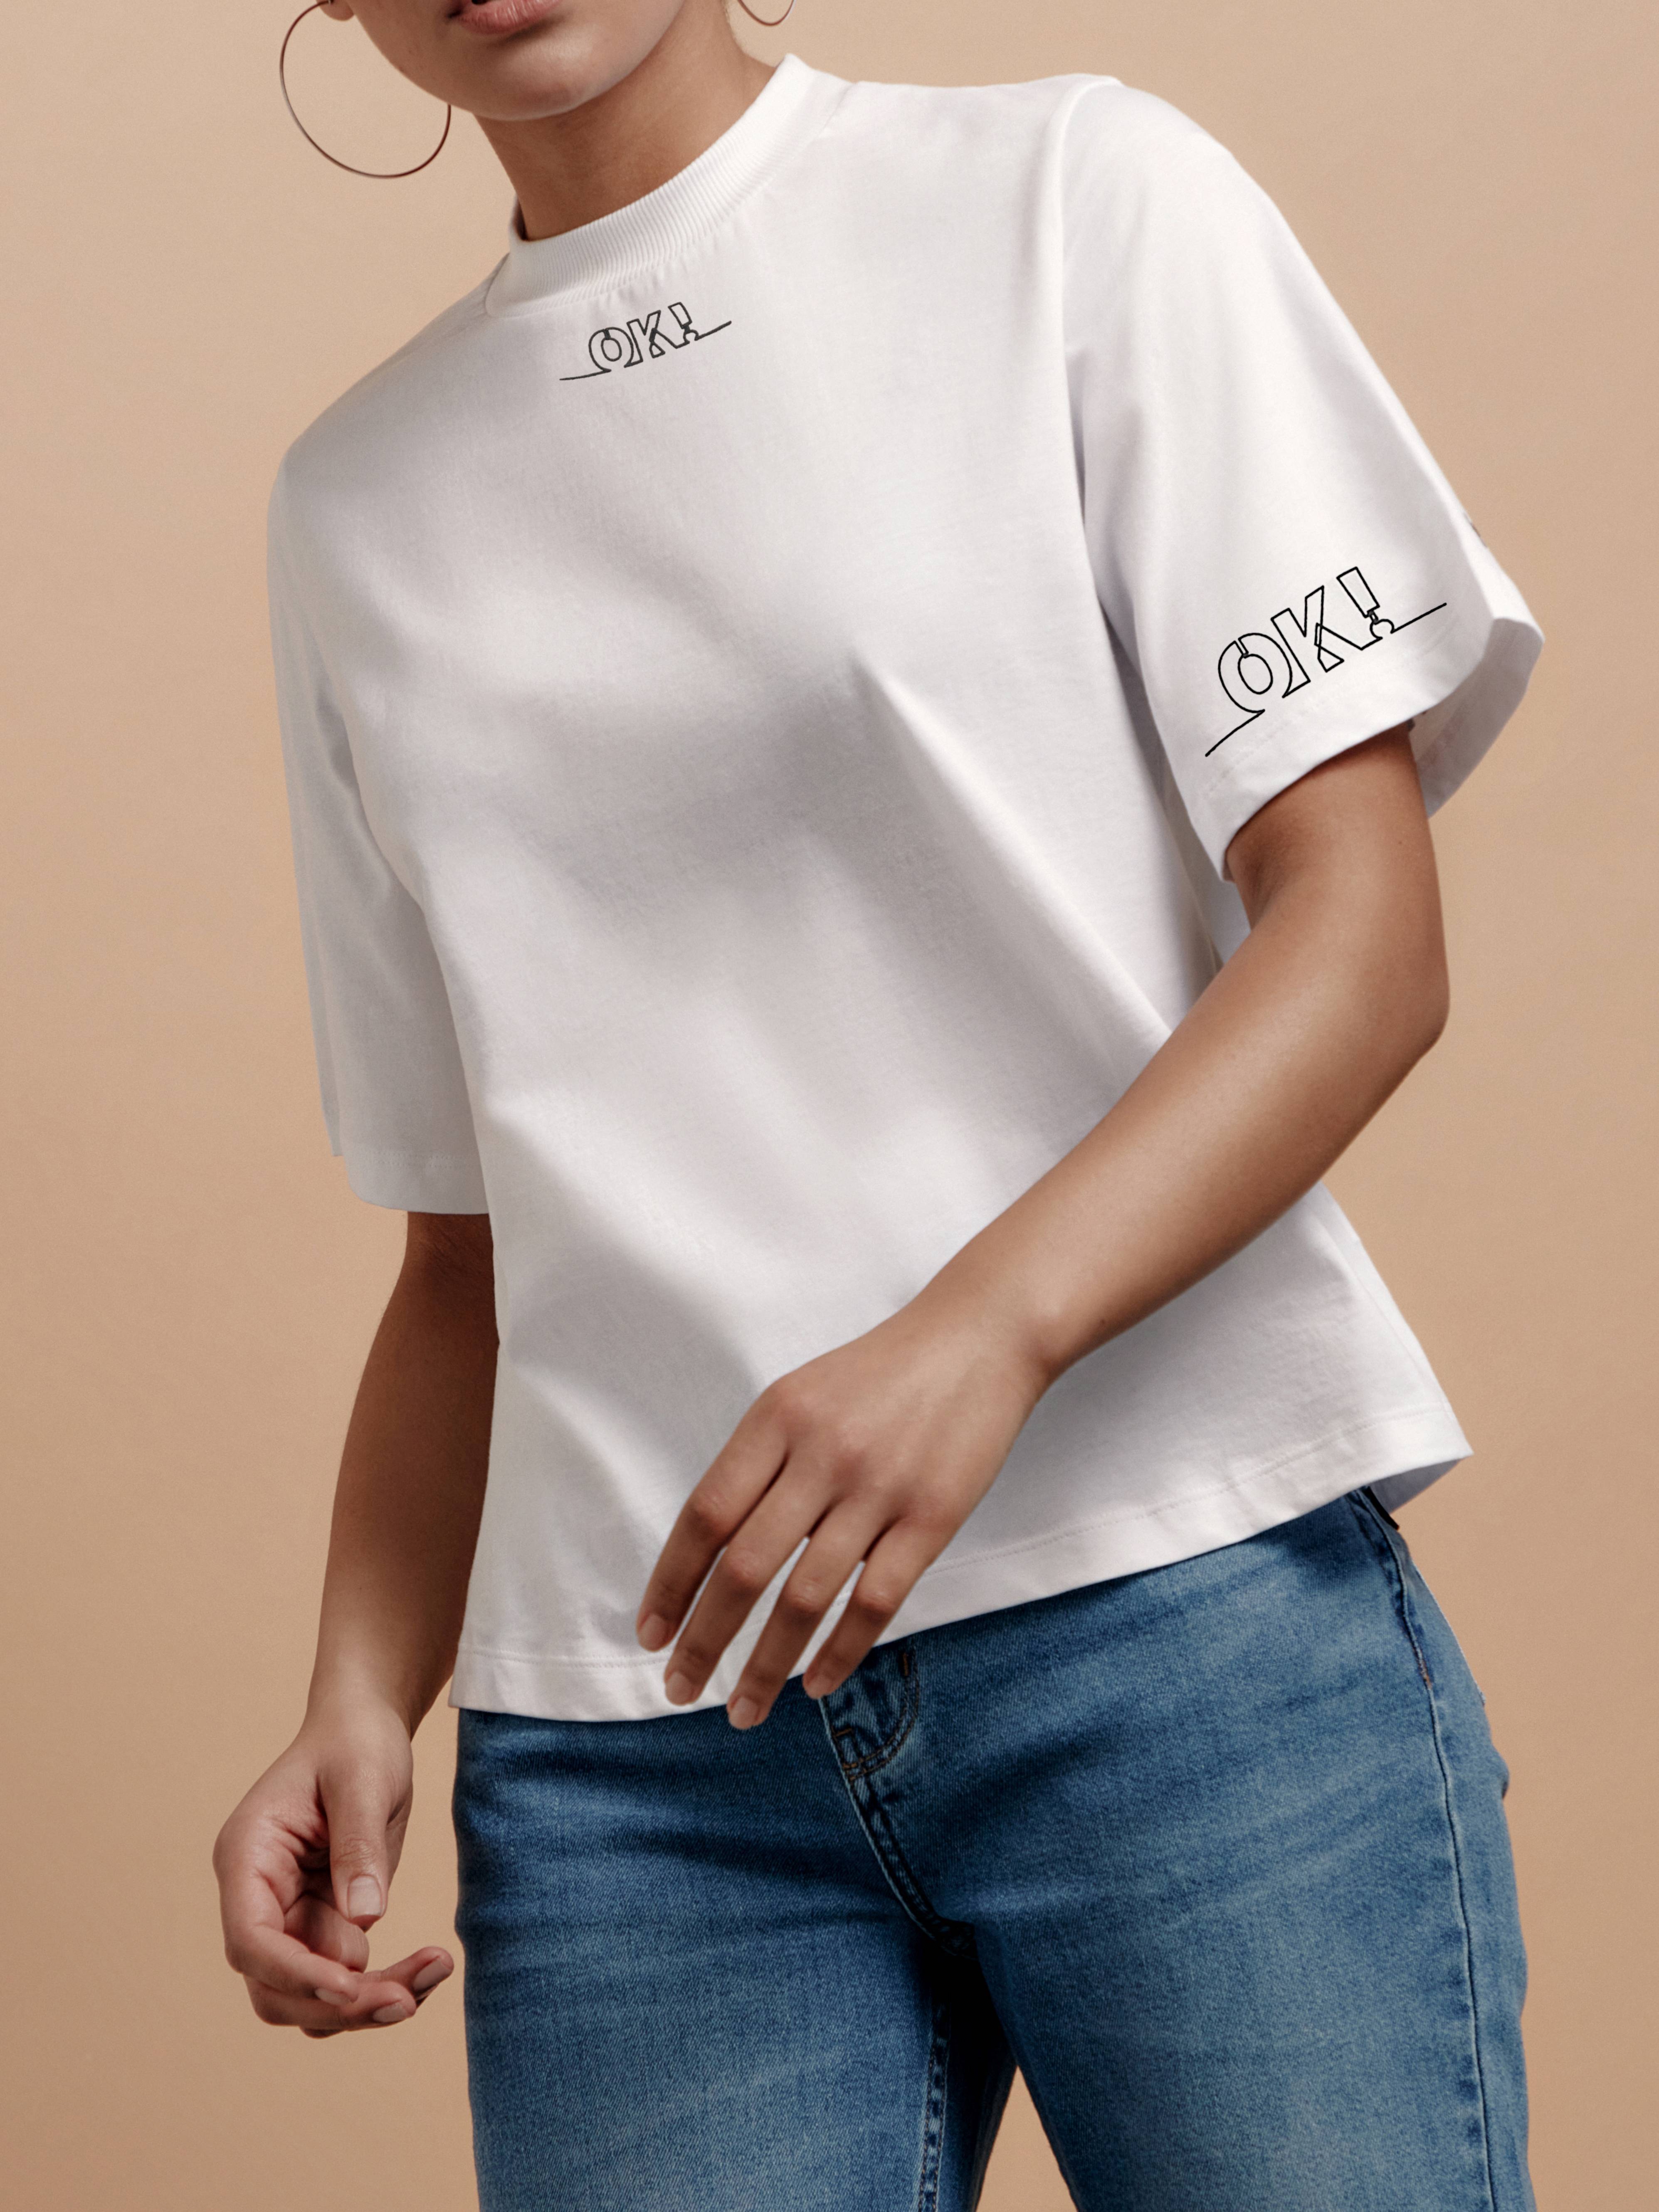 Oversize-футболка с рисунком «Ok» LD 1668 Conte ⭐️, цвет white, размер 170-84/xs